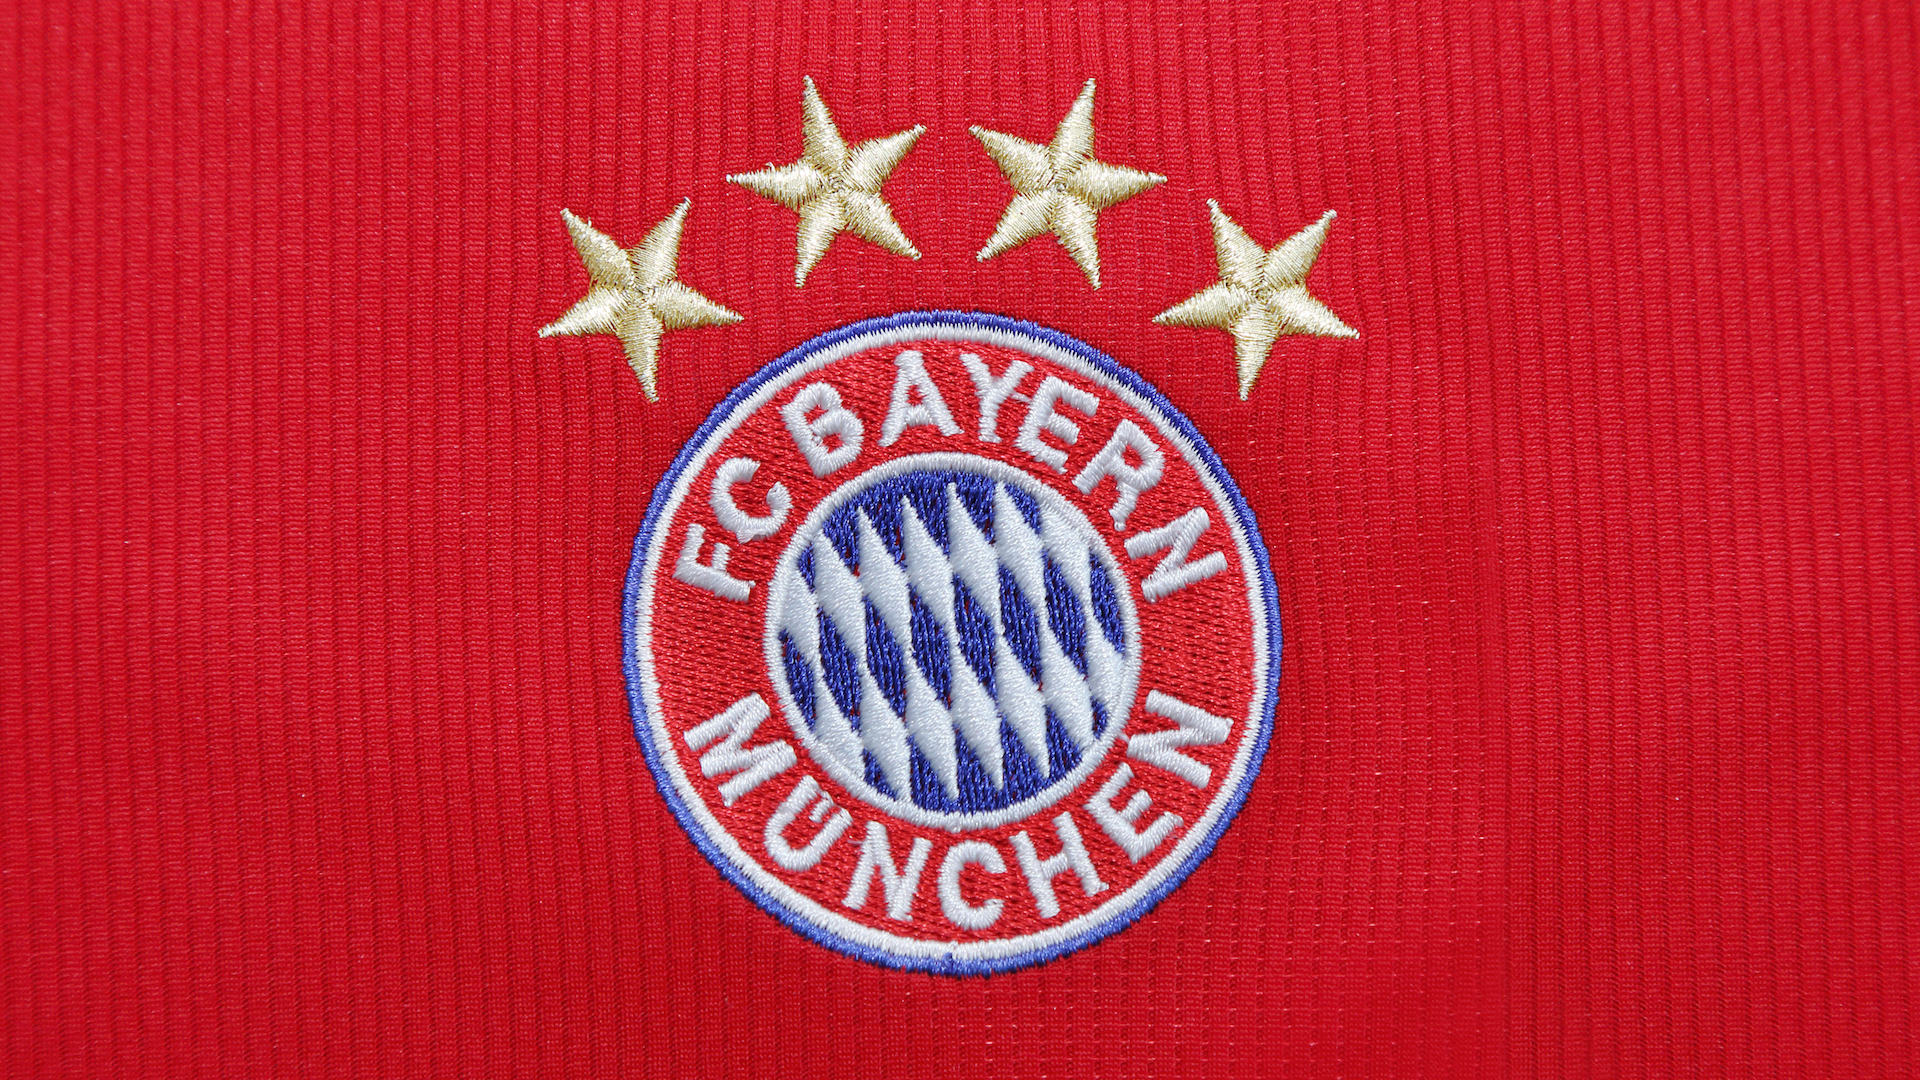 A Bayern Munich shirt